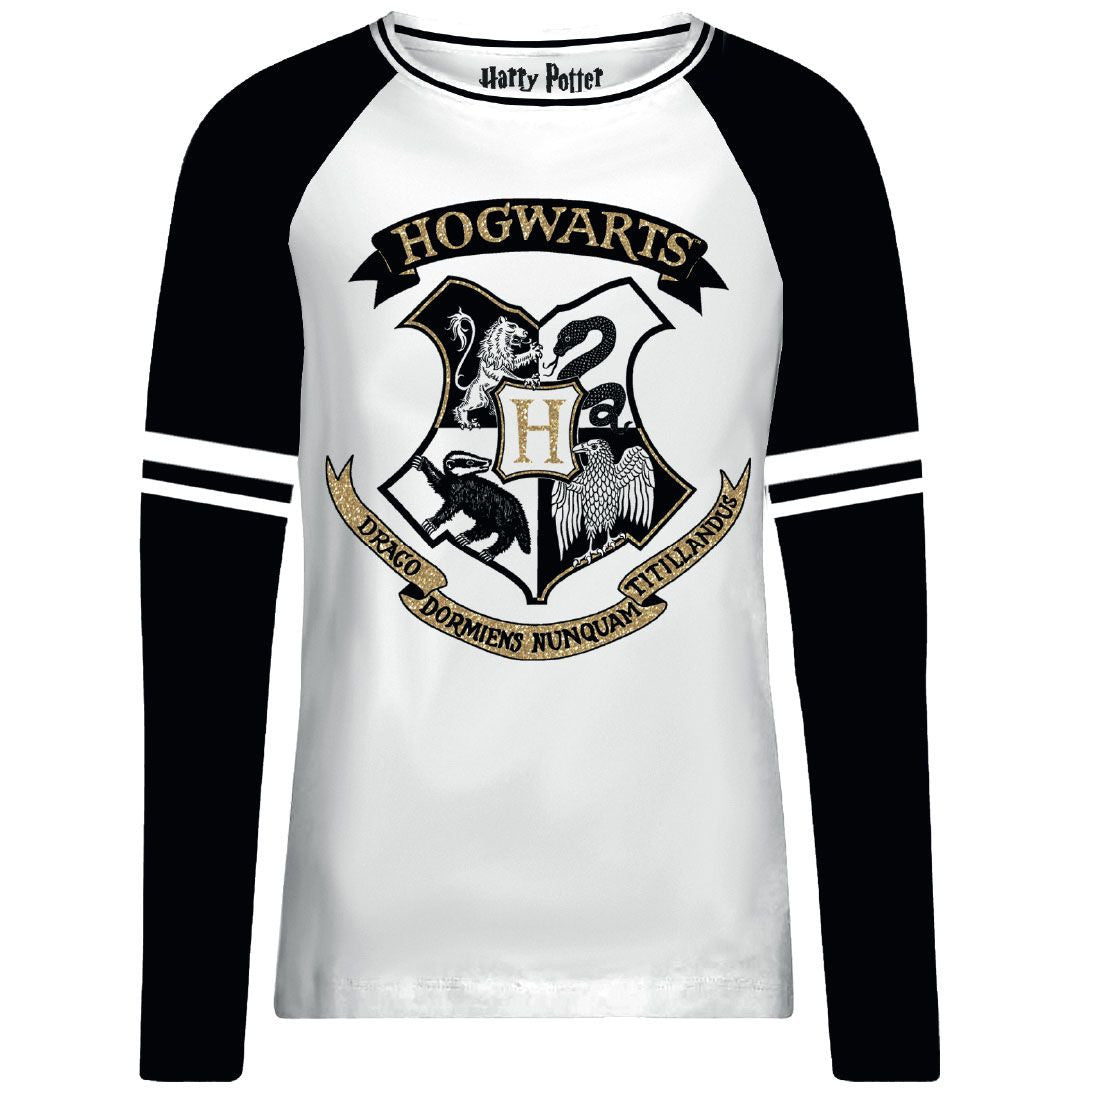 Harry Potter Women's T-shirt - Hogwarts Gold Glitter